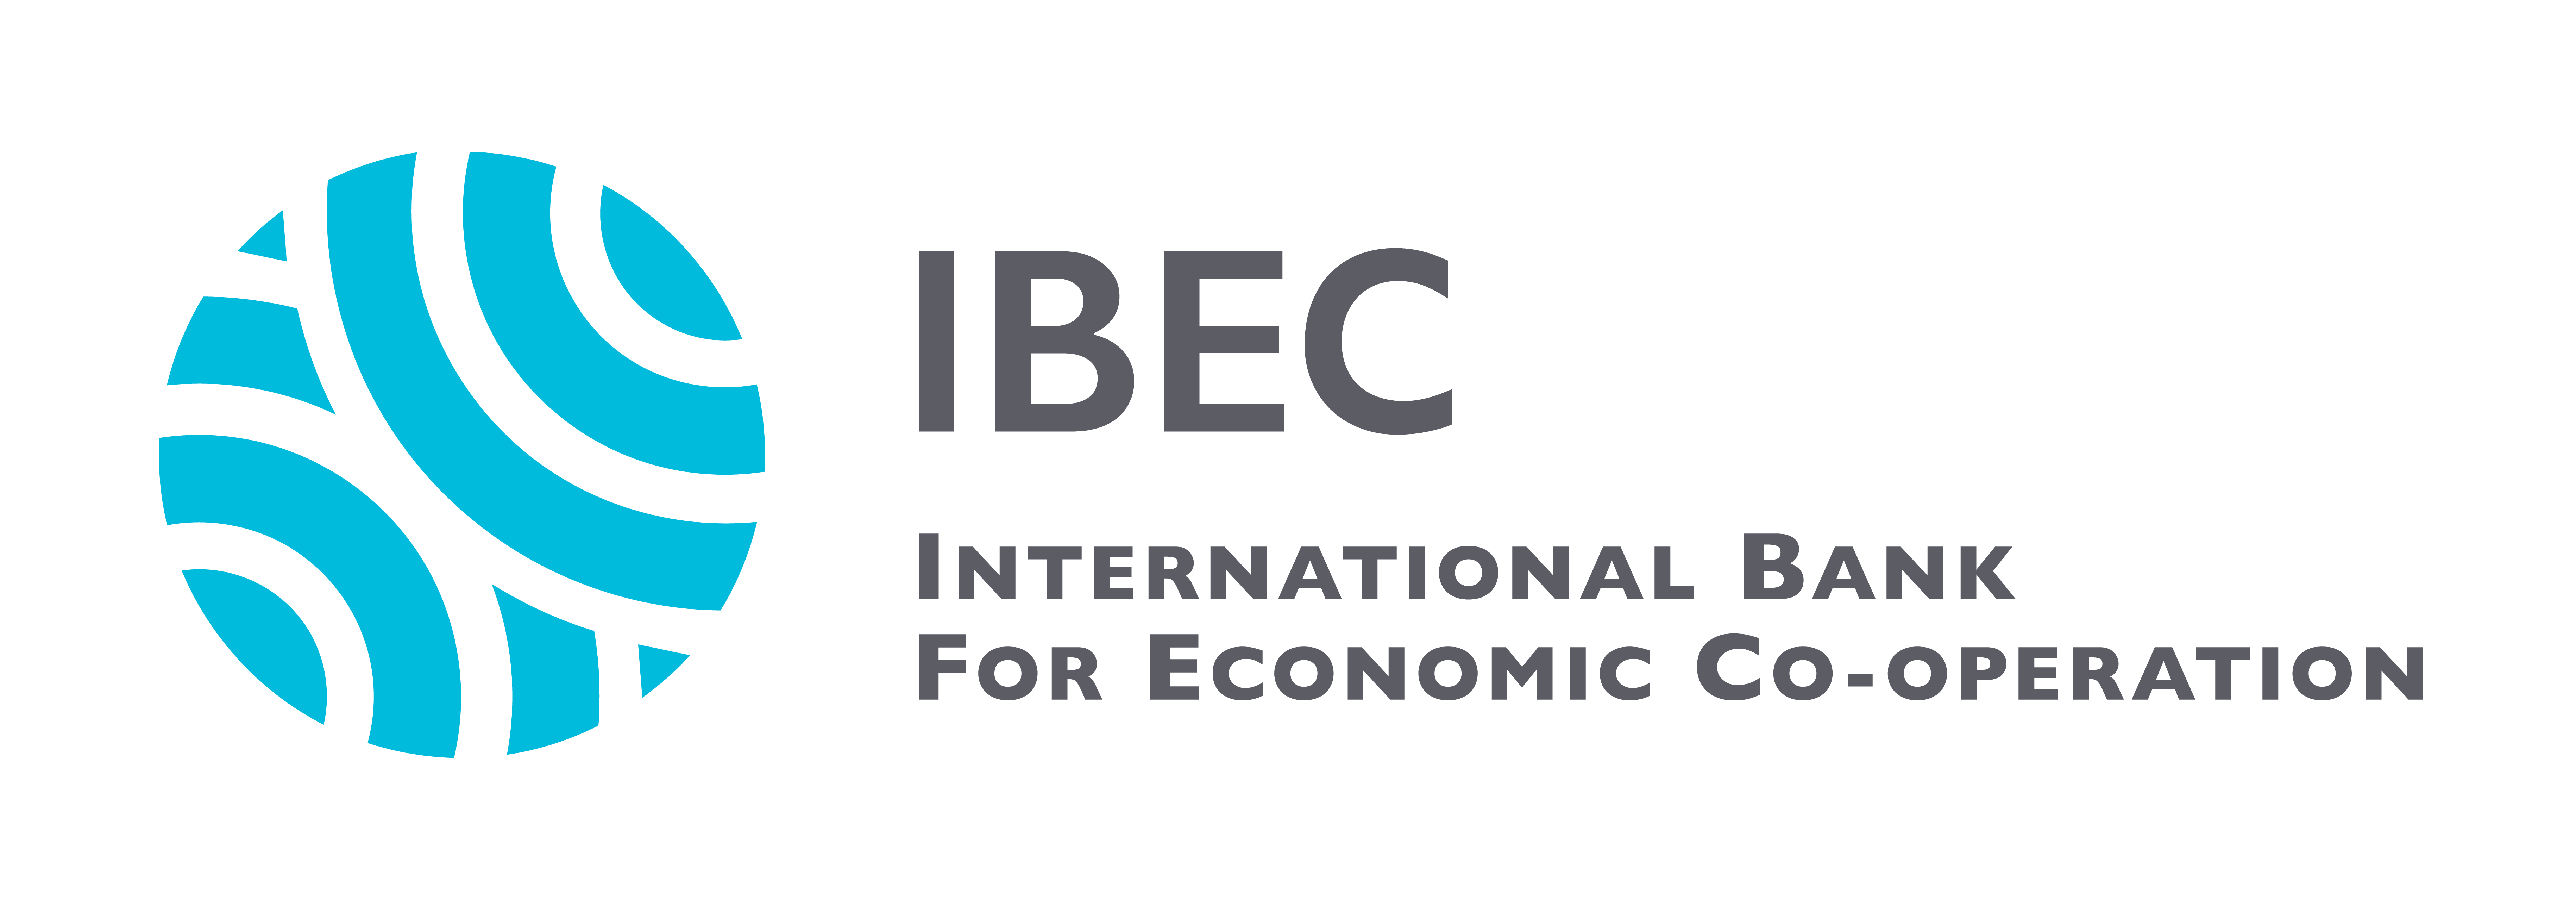 1 инвестиционный банк россии. Международный банк экономического сотрудничества Маши Порываевой. МБЭС логотип. Международный банк экономического сотрудничества логотип. IBEC банк.